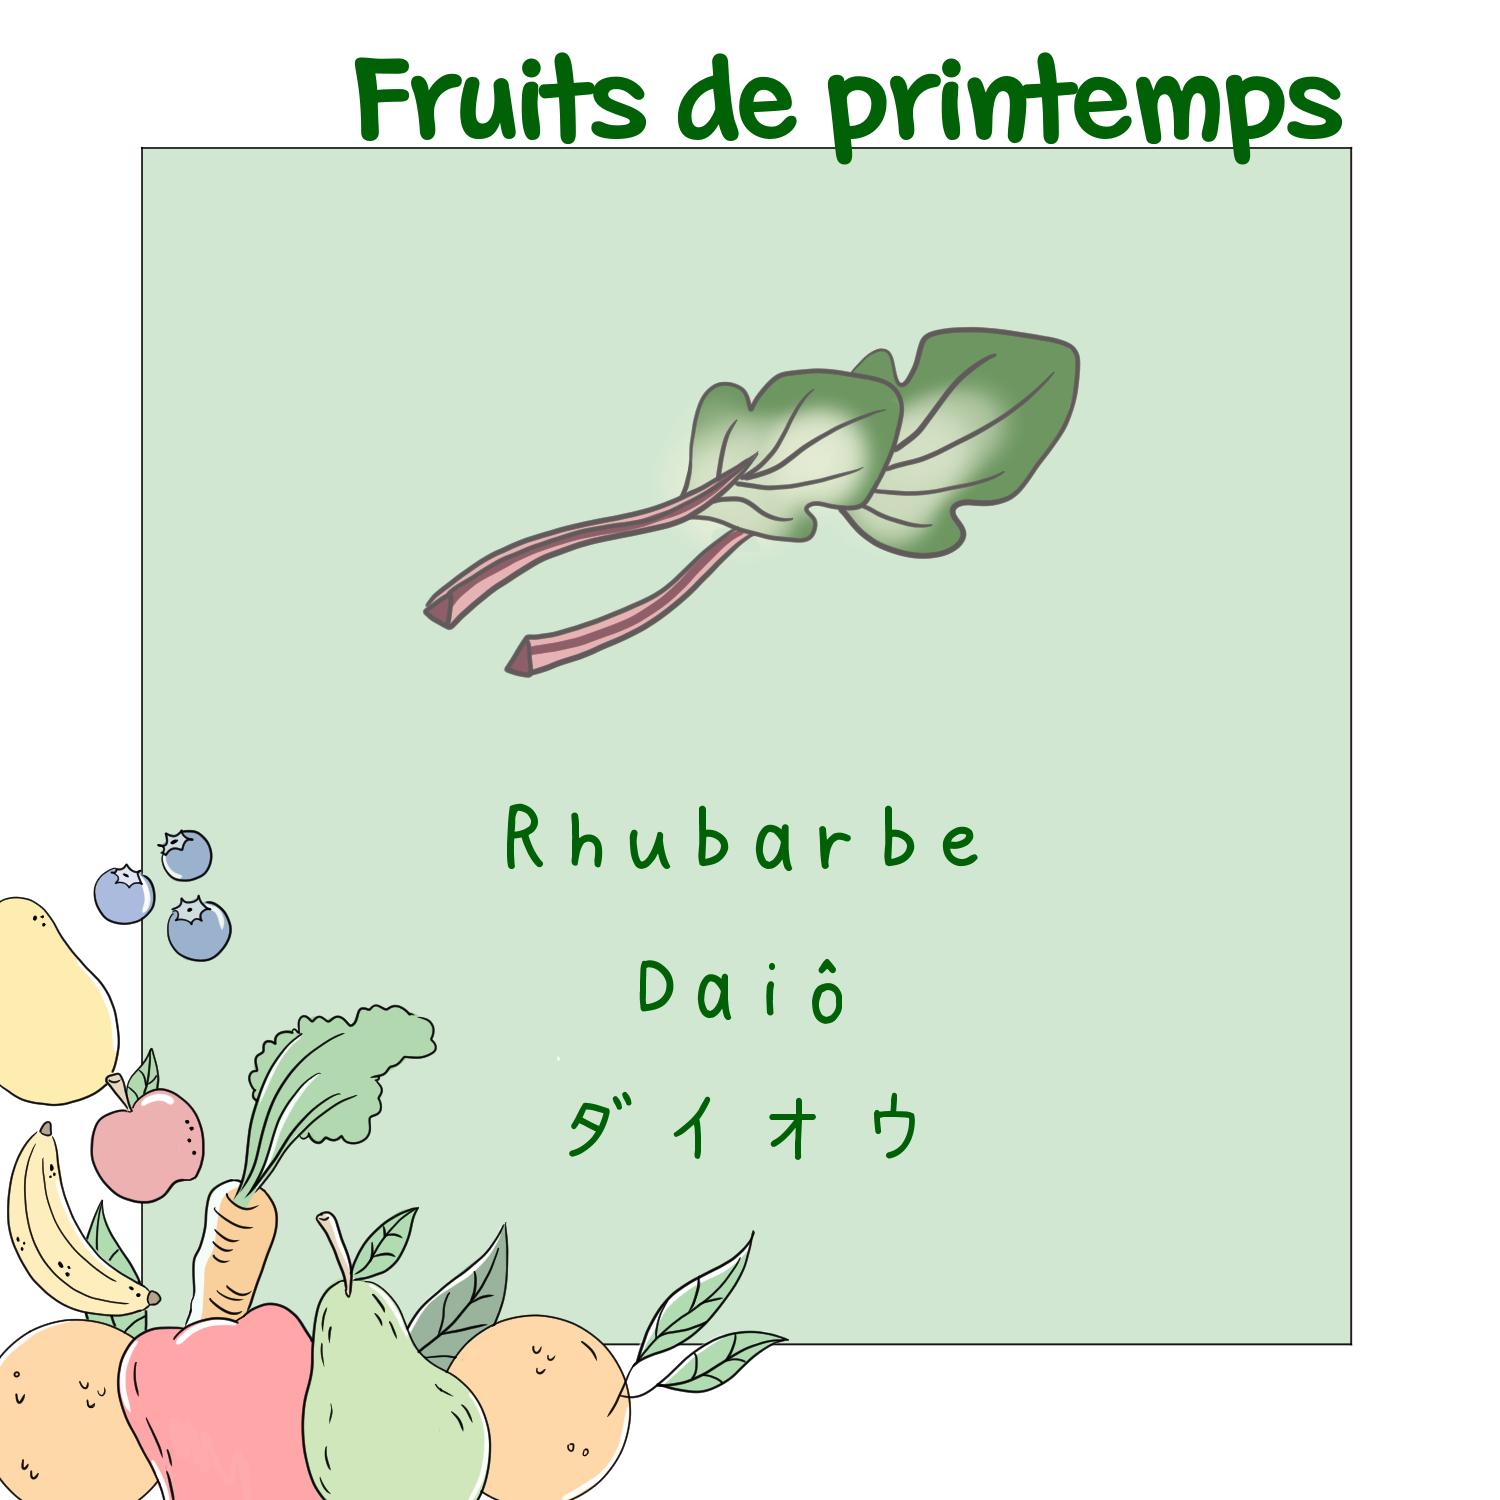 9) Rhubarbe